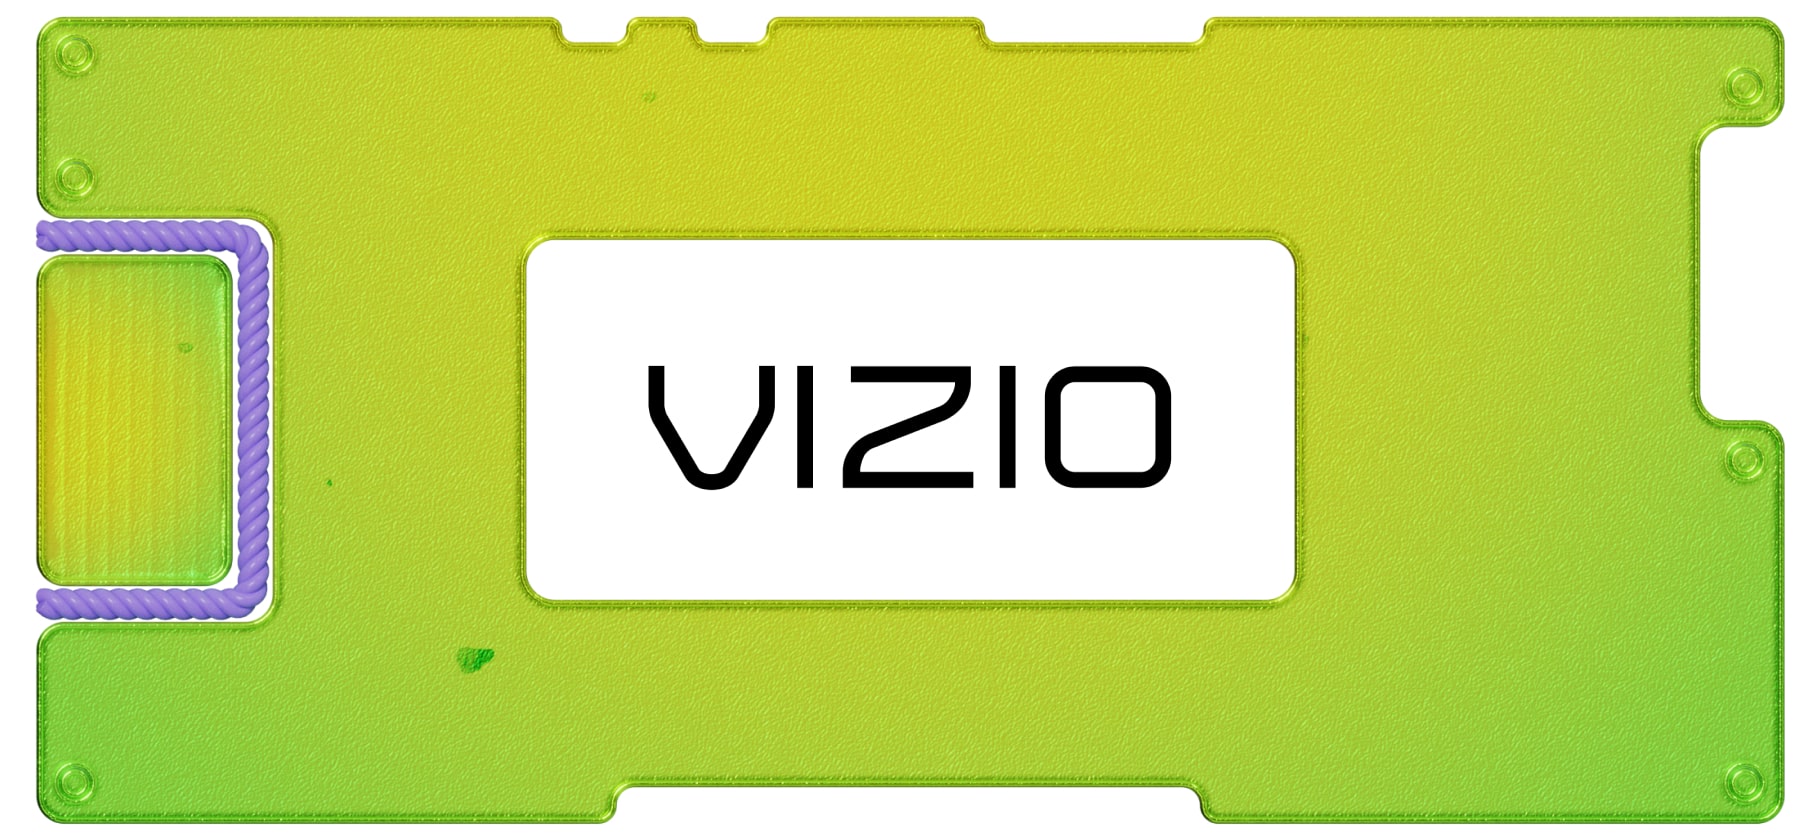 Инвестидея: Vizio, потому что больше стриминга богу стриминга